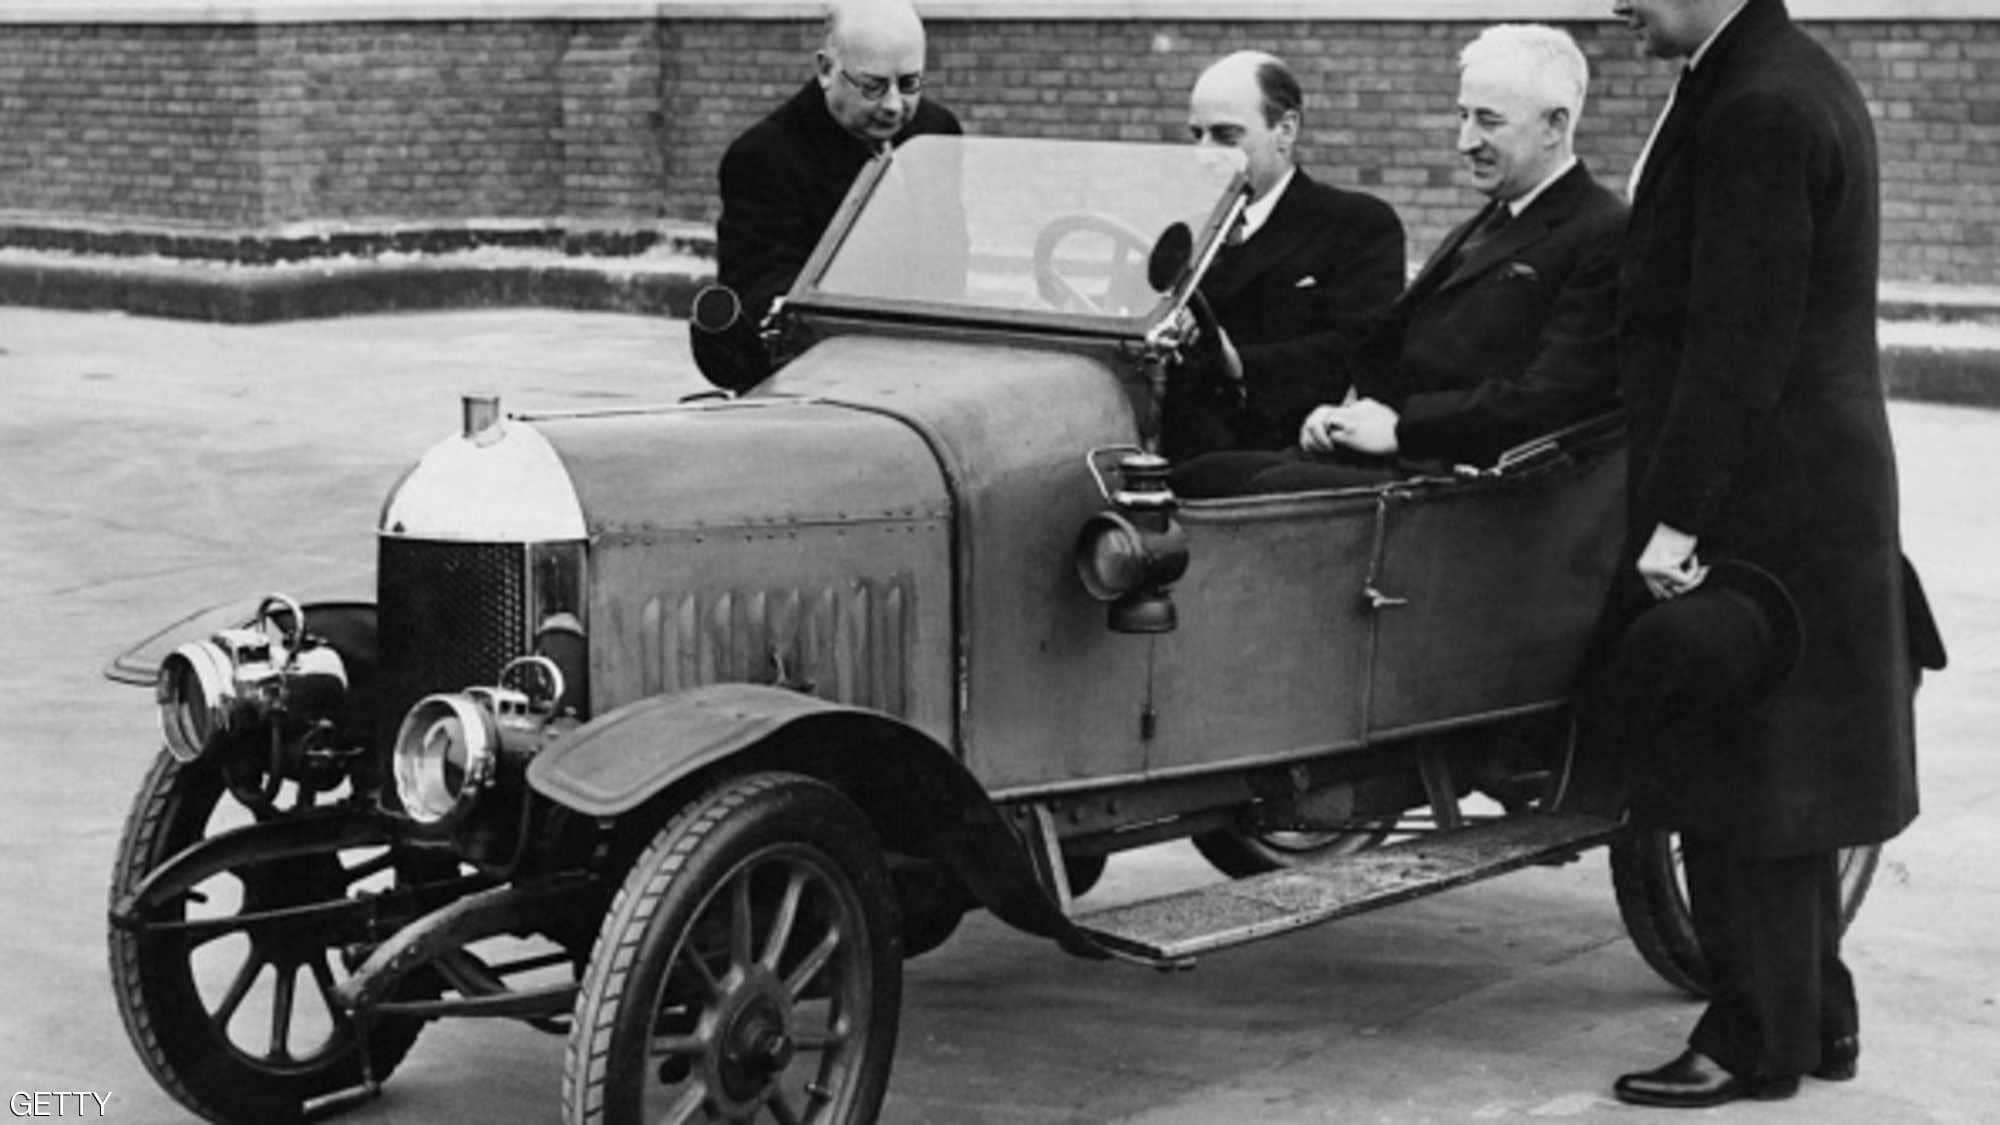 "بالصور" هذا ما بدت عليه السيارات قبل 100 عام من الآن 21